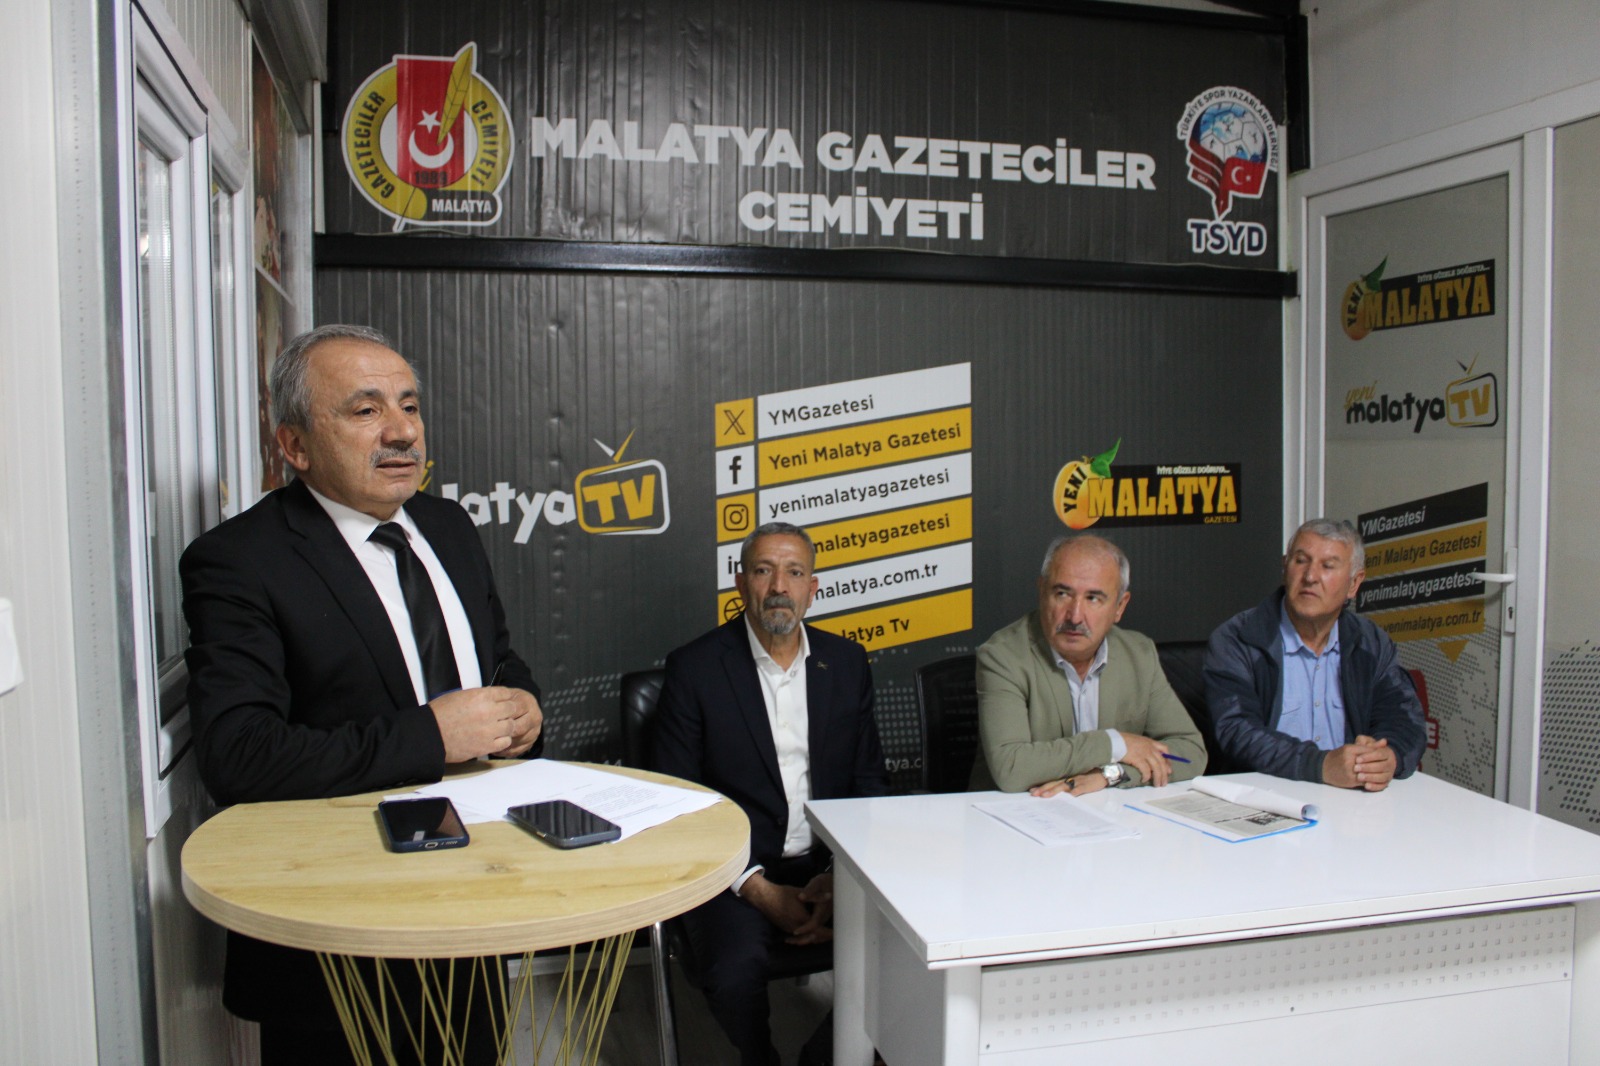 Malatya Gazeteciler Cemiyeti 15. Genel Kurulunu Konteynır da Yaptı